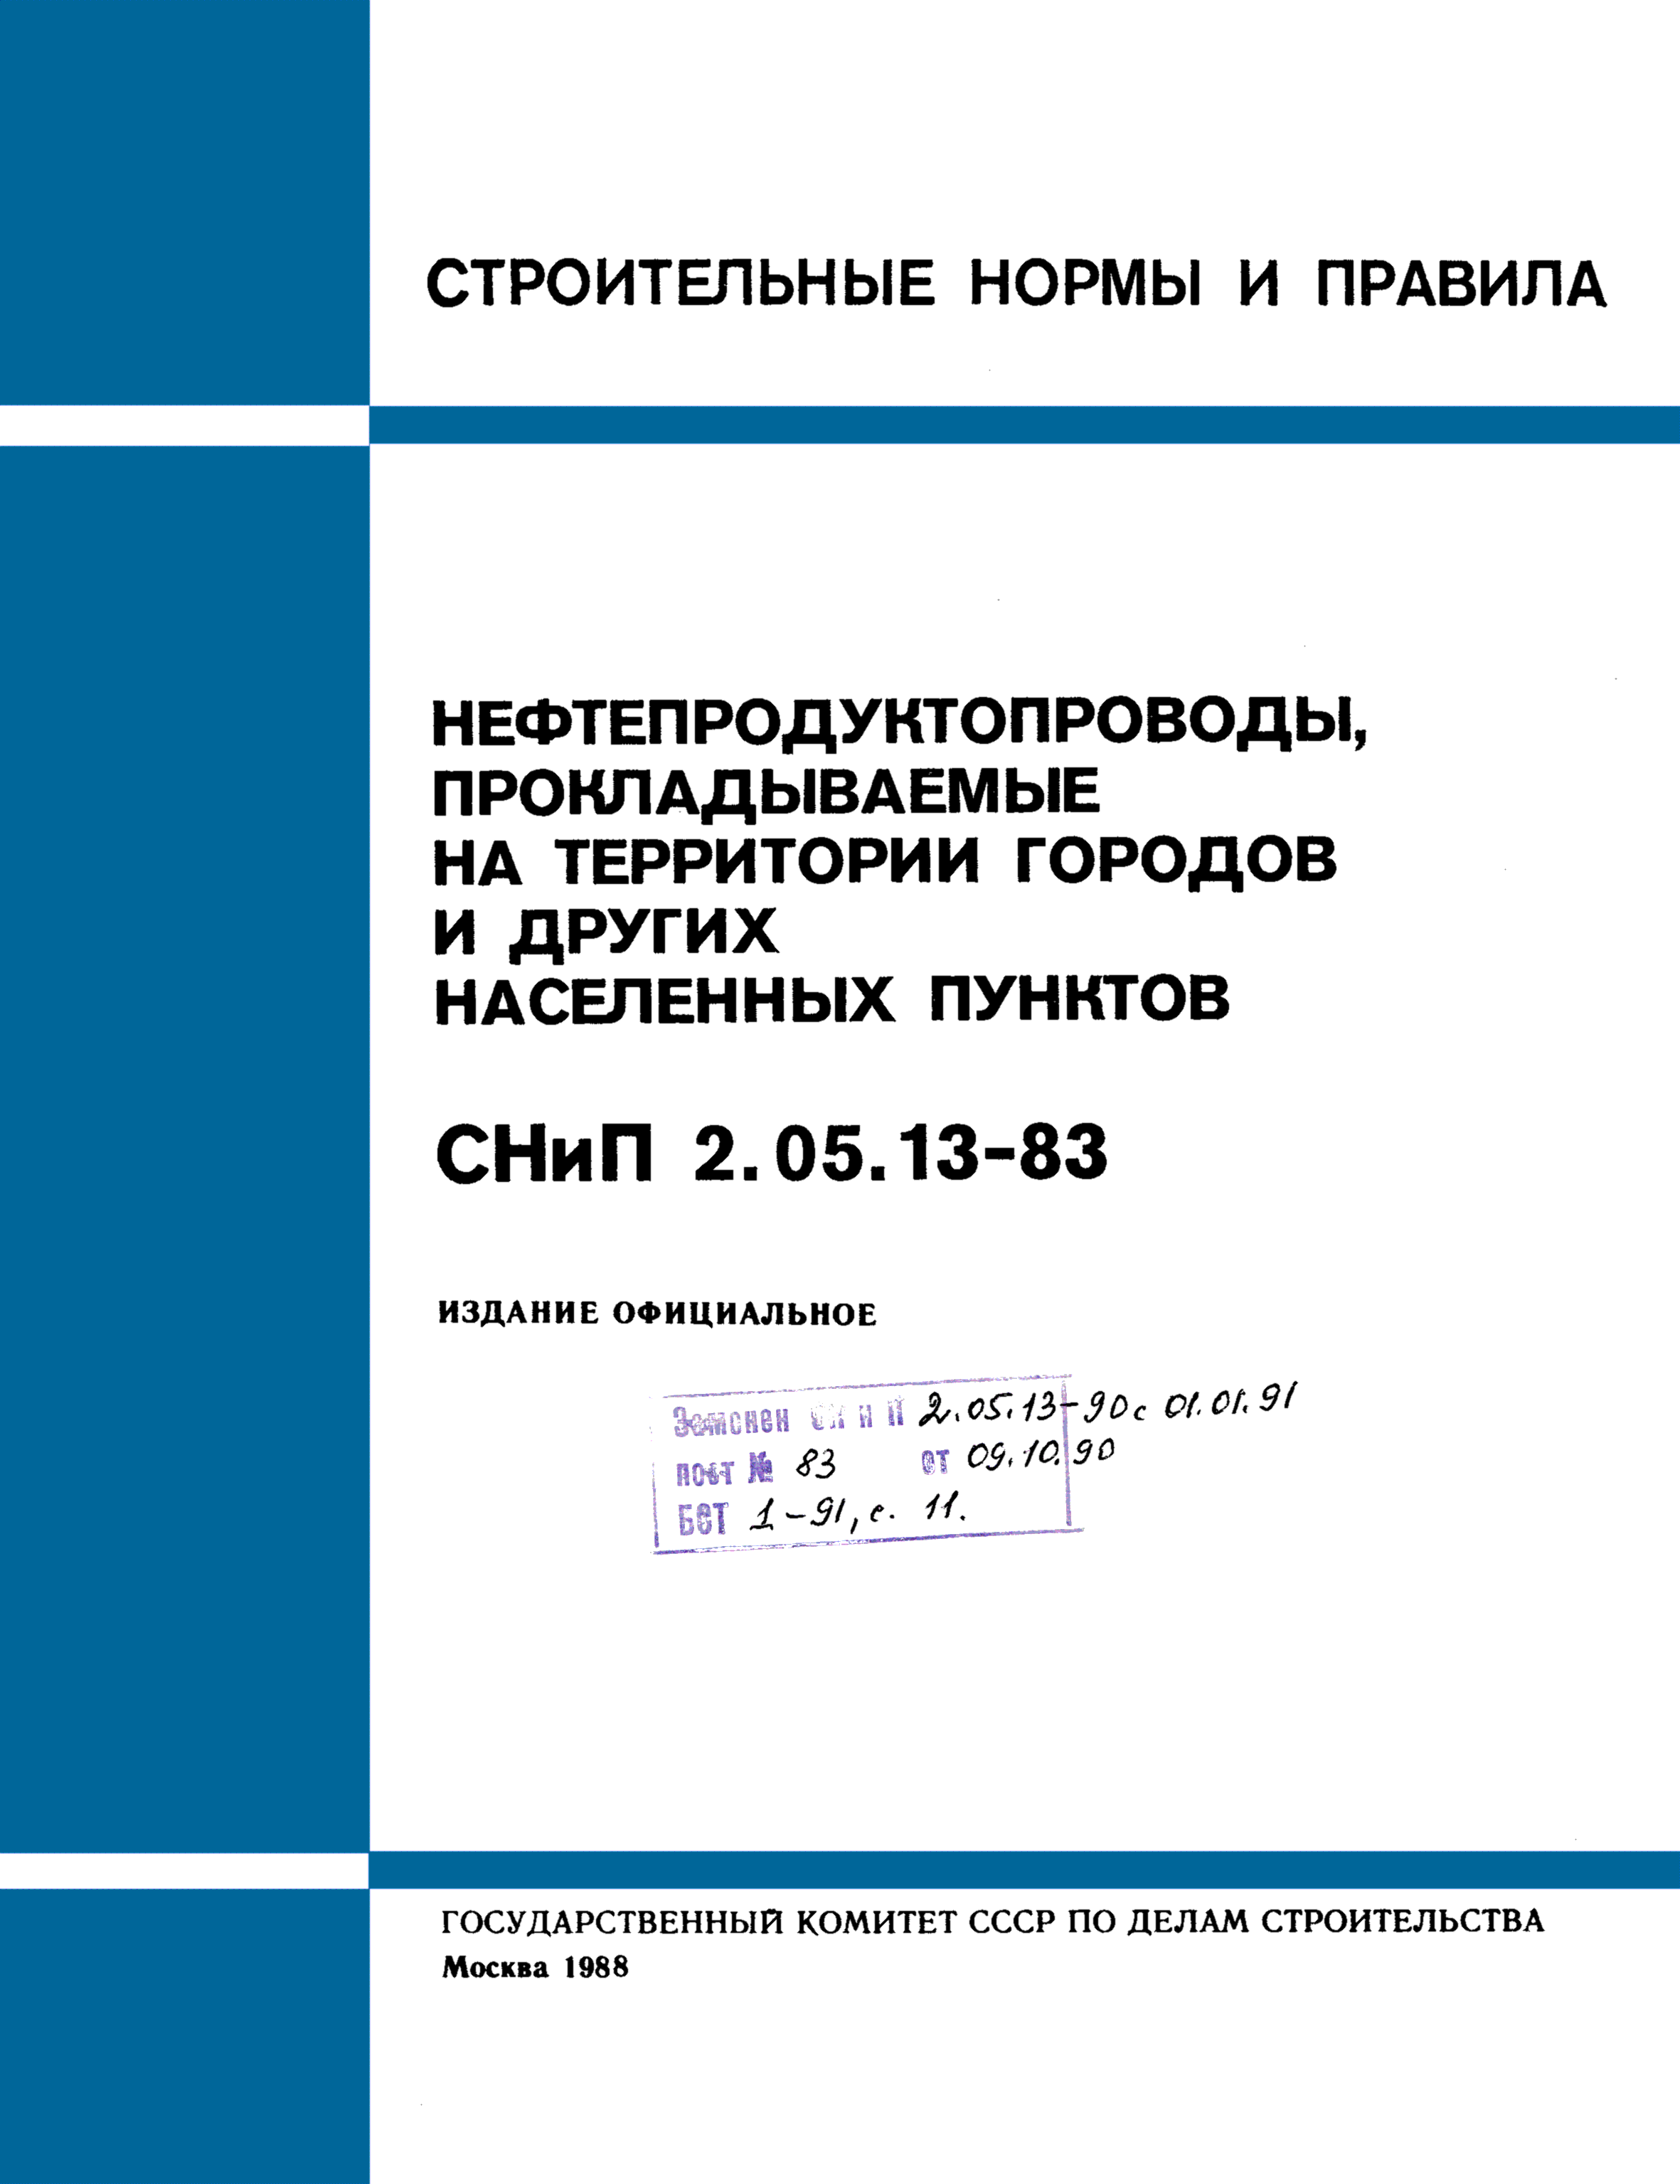 СНиП 2.05.13-83